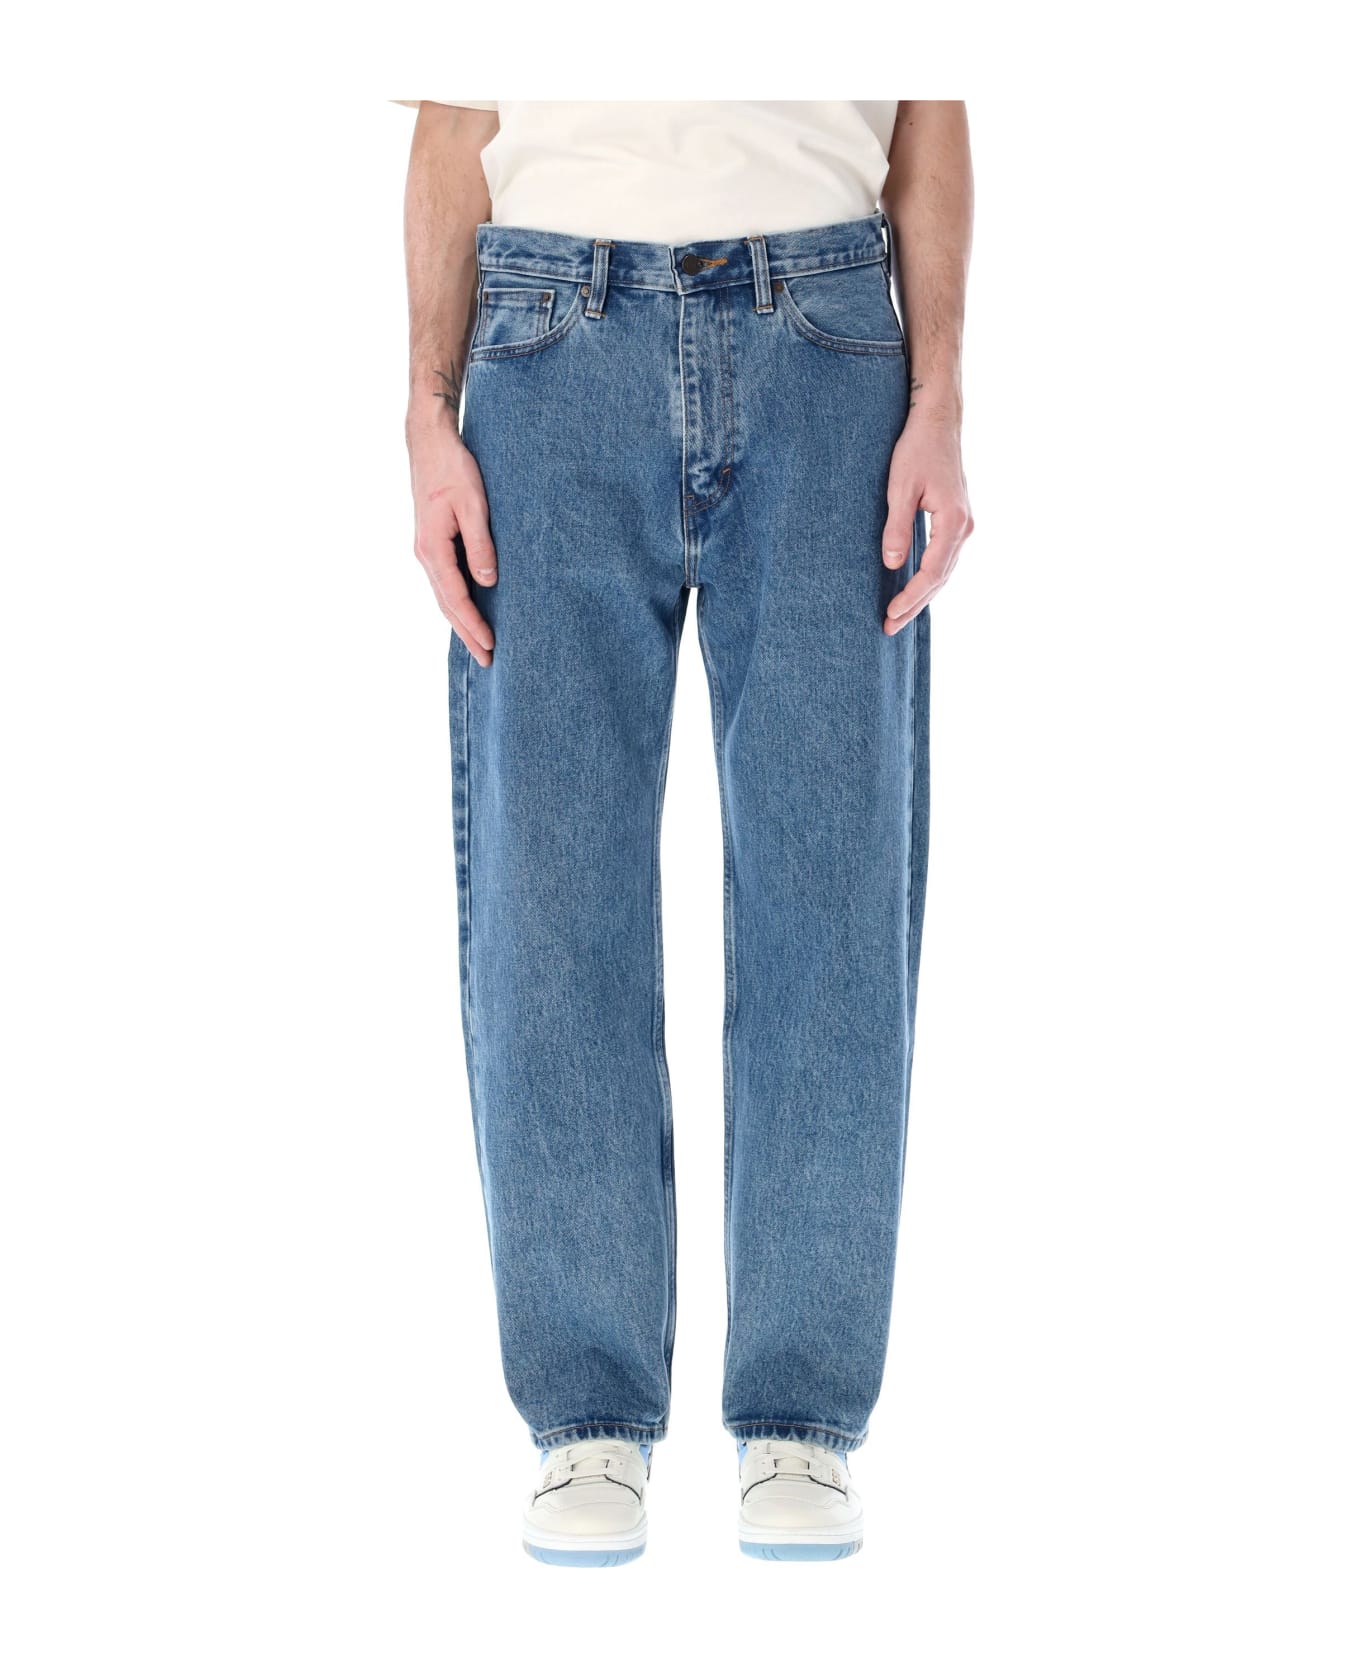 Levi's Cotton Baggy Five Pocket Jeans - MED BLUE デニム